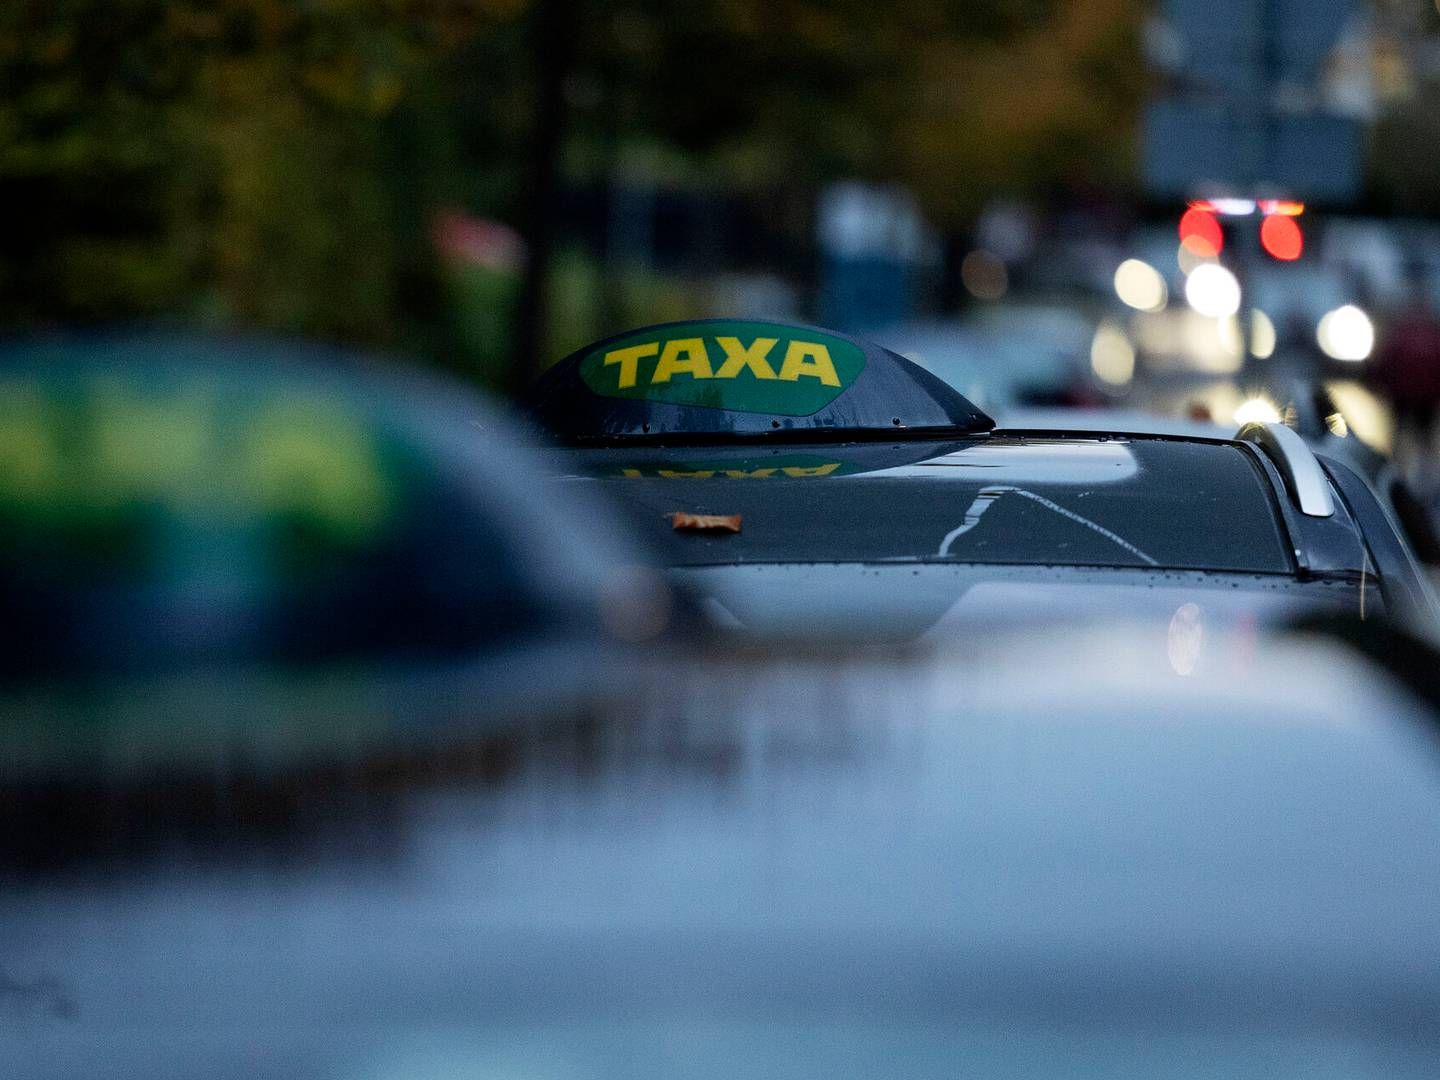 Andre yderområder har samme udfordring med at tiltrække taxiselskaber, lyder det fra Danske Regioner. | Foto: Thomas Borberg/Ritzau Scanpix